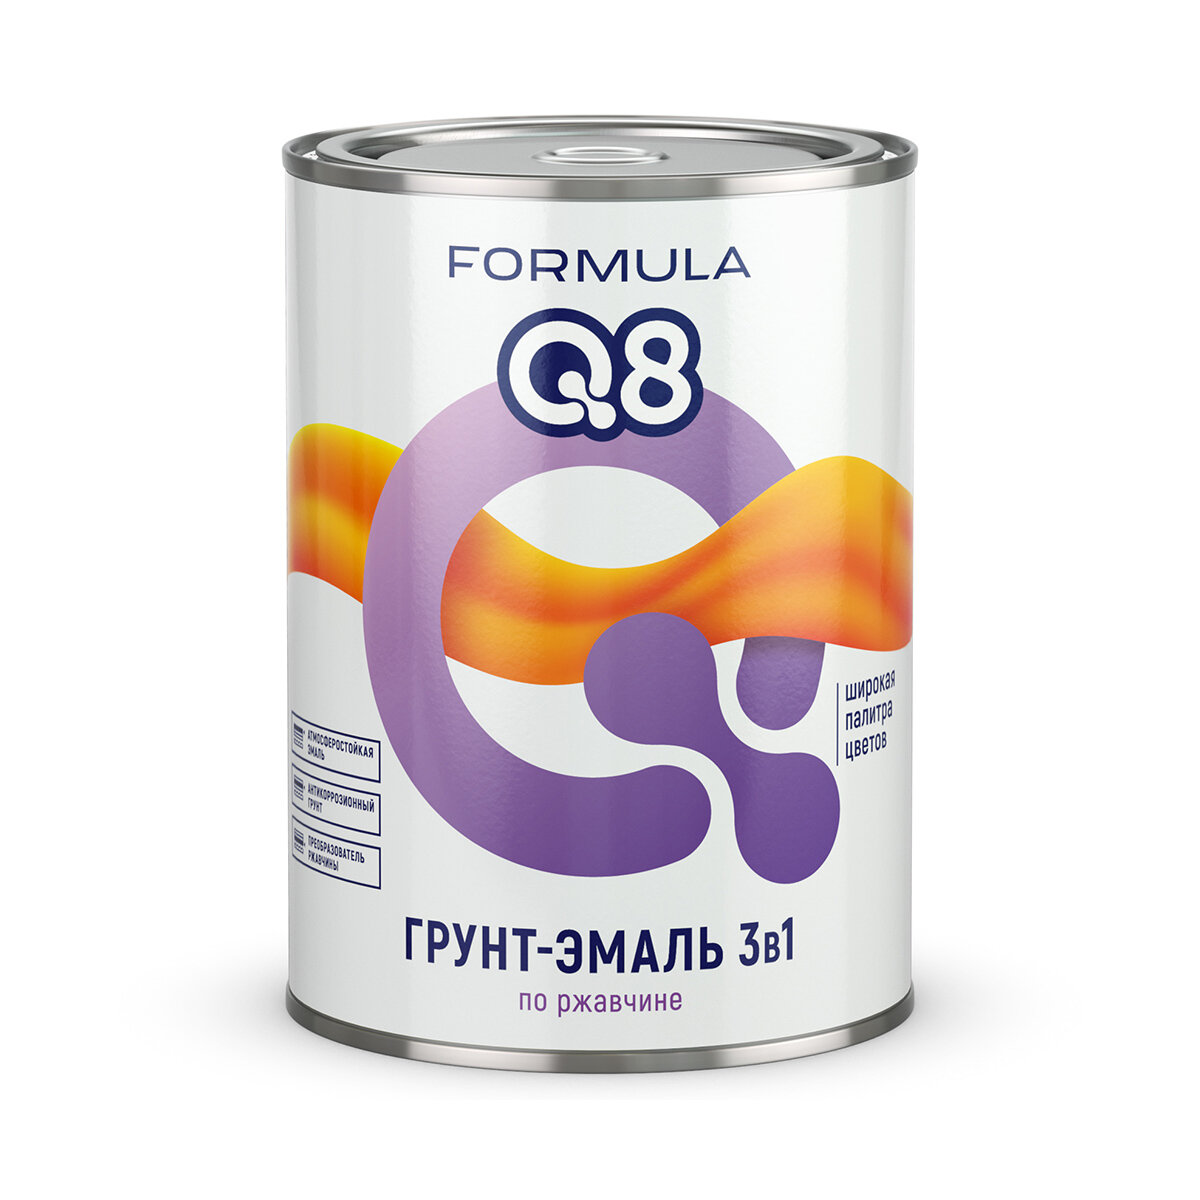 Эмаль алкидная (А) Formula Q8 3в1 по ржавчине